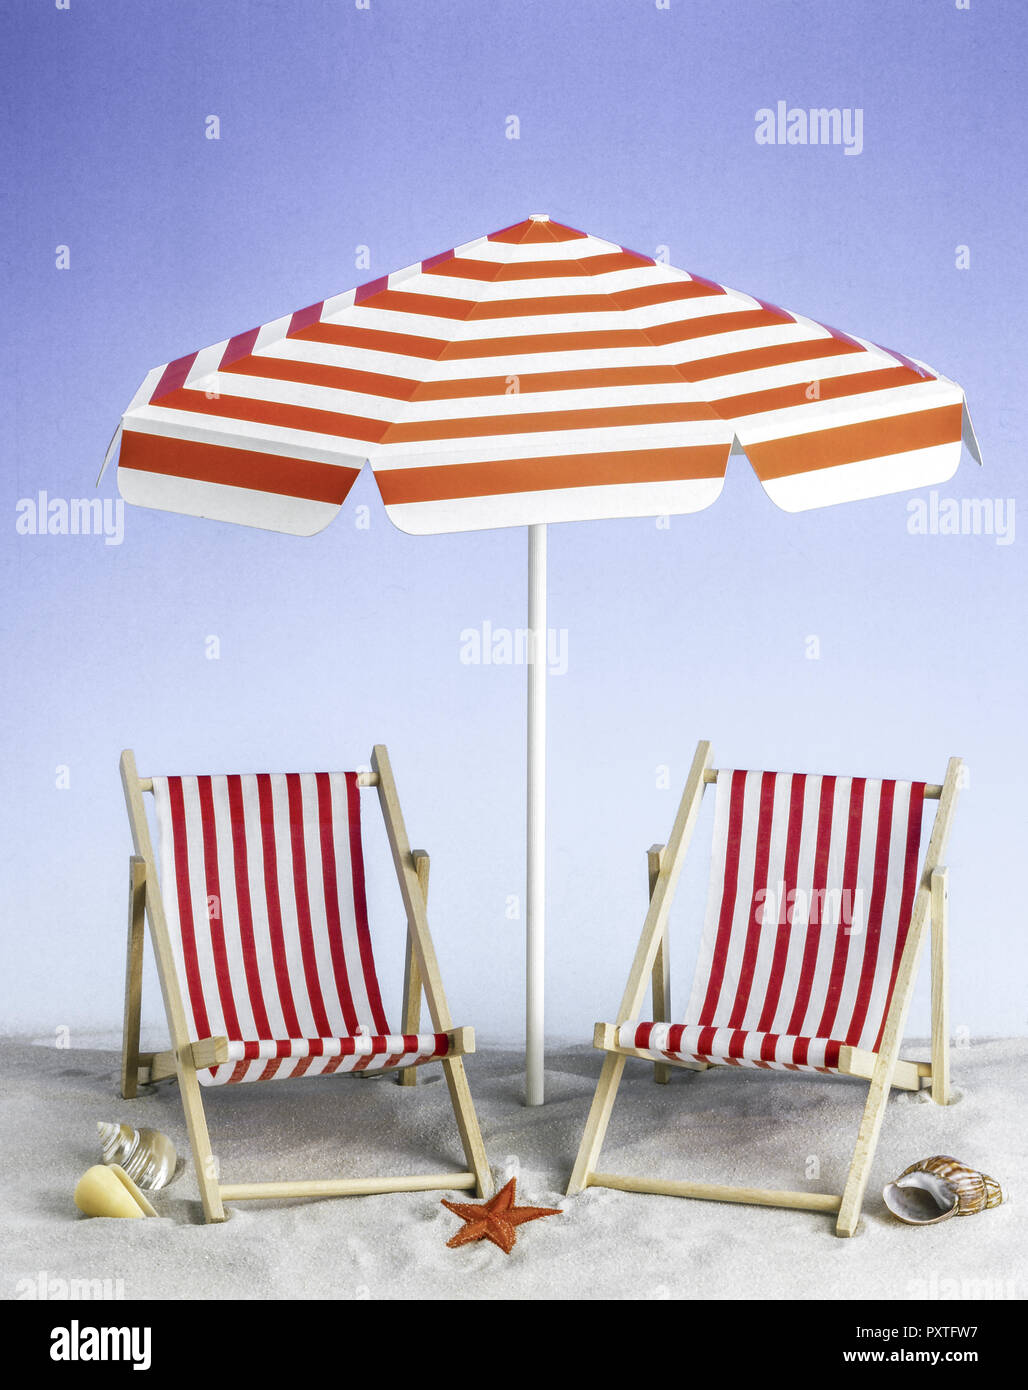 Zwei Liegestühle unter einem Sonnenschirm, Symbolfoto, Sommerurlaub, Two beach chairs under an umbrella, symbol photo, summer, Still Life, Relax, Recr Stock Photo